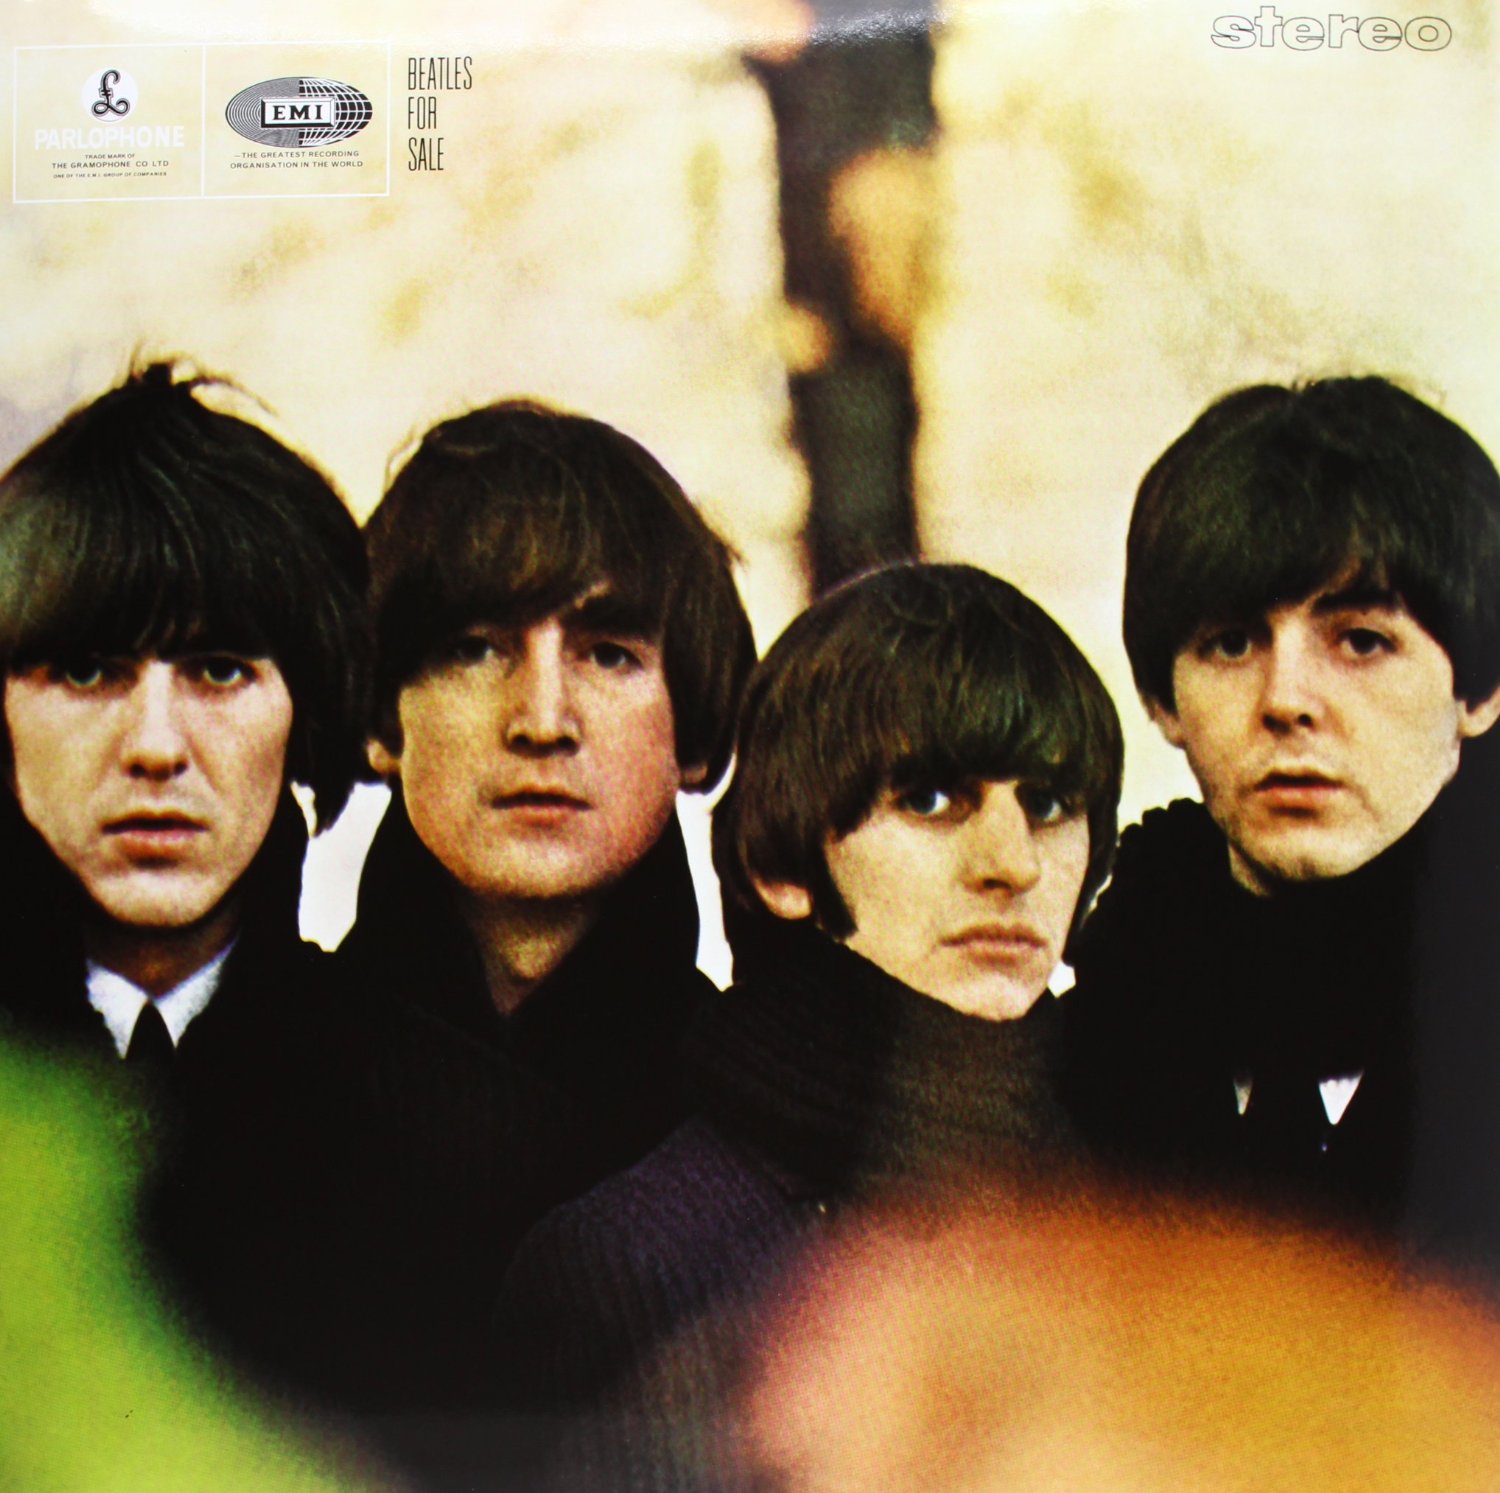 Vinile Beatles (The) - Beatles For Sale NUOVO SIGILLATO, EDIZIONE DEL 01/04/2013 SUBITO DISPONIBILE